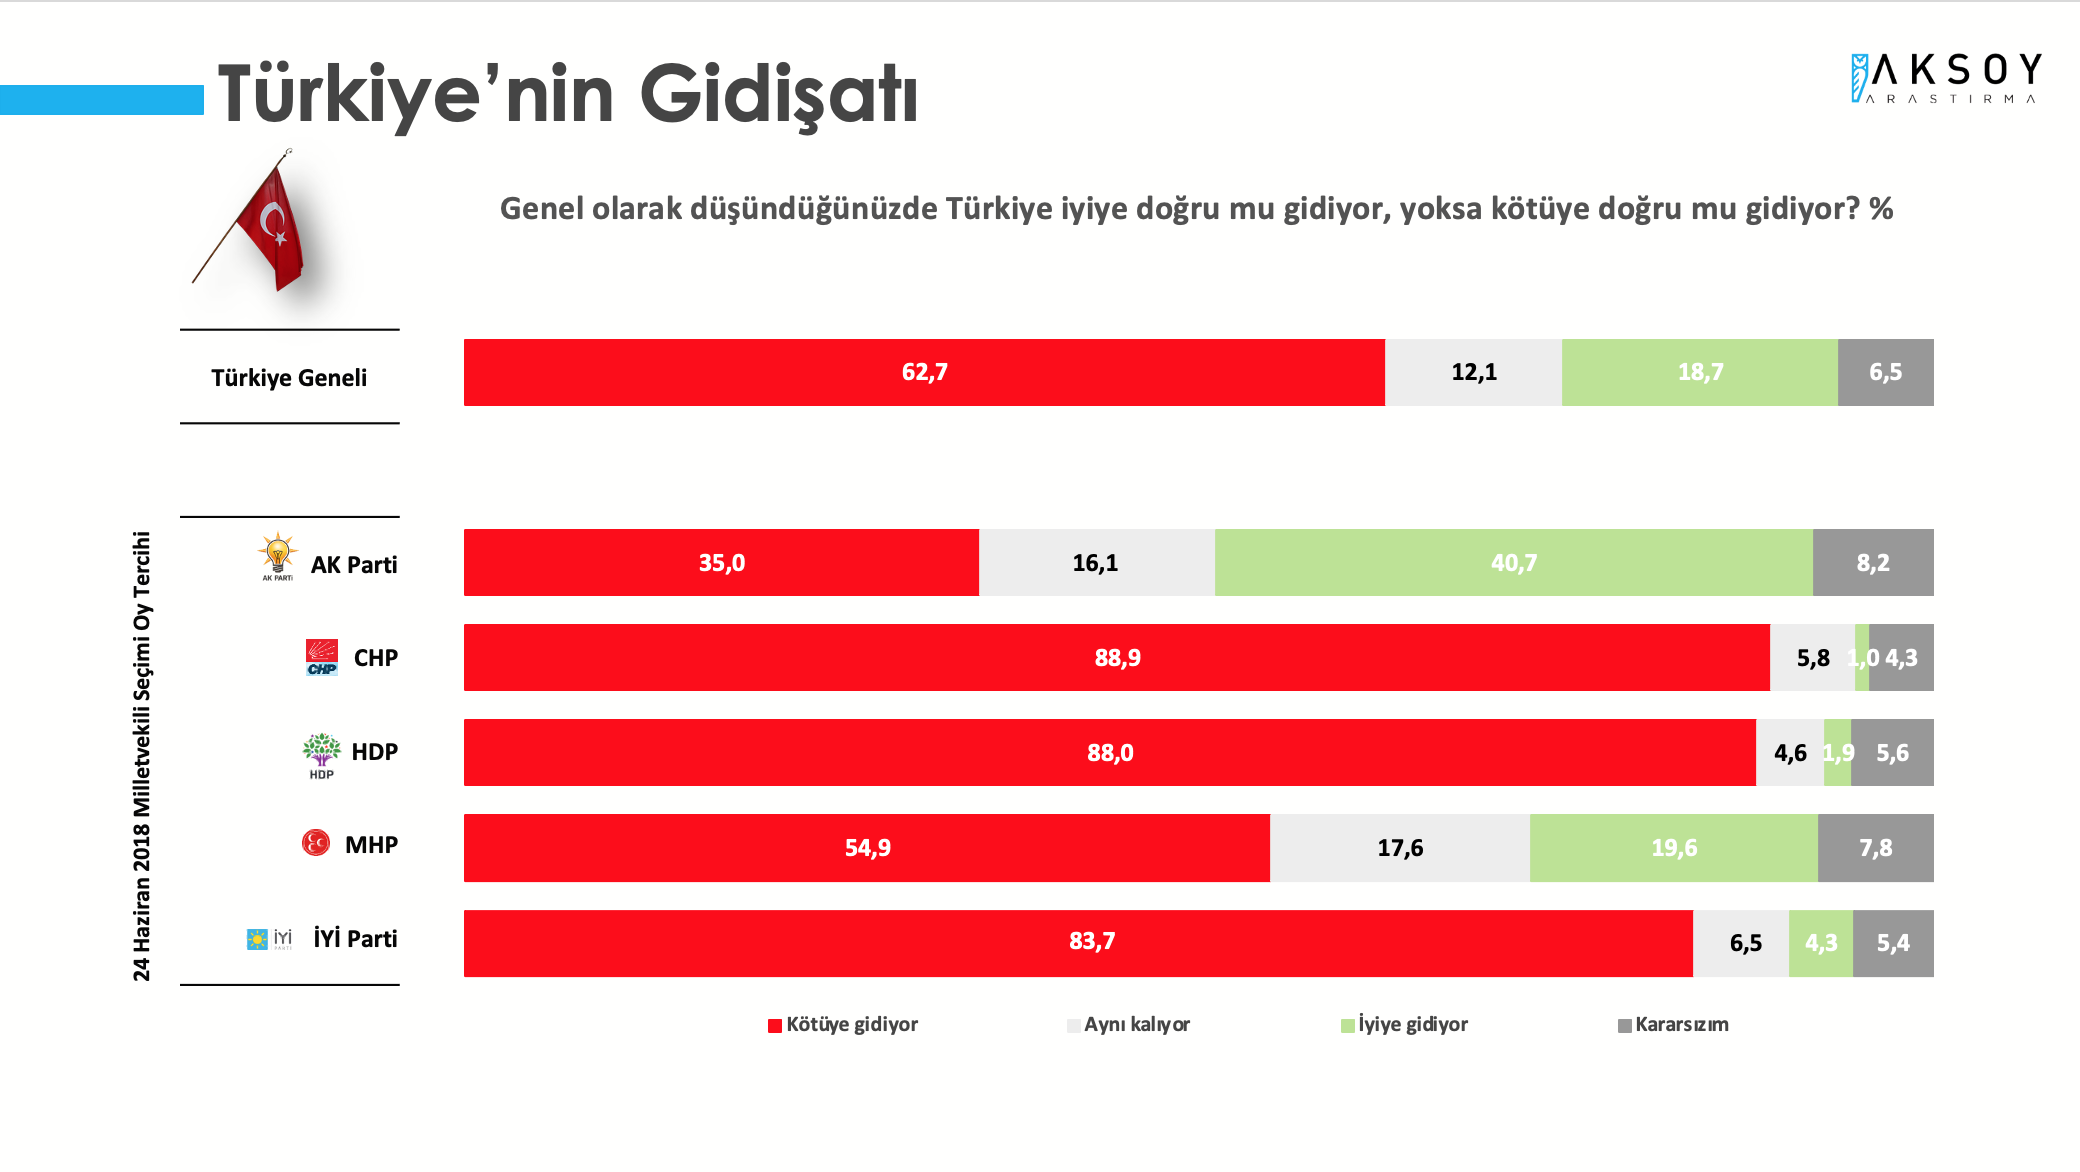 <p><strong>TÜRKİYE KÖTÜYE GİDİYOR</strong></p><p>Araştırmaya katılanlara Türkiye iyiye doğru mu gidiyor yoksa kötüye doğru mu gidiyor? sorusu yöneltildi. Türkiye kötüye gidiyor cevabını verenlerin oranı yüzde 62,7 iken iyiye gittiğini düşünenlerin oranı yüzde 18,7 oldu. Türkiye’nin aynı olduğu cevabını verenlerin oranı ise yüzde 12,7 oldu.</p>